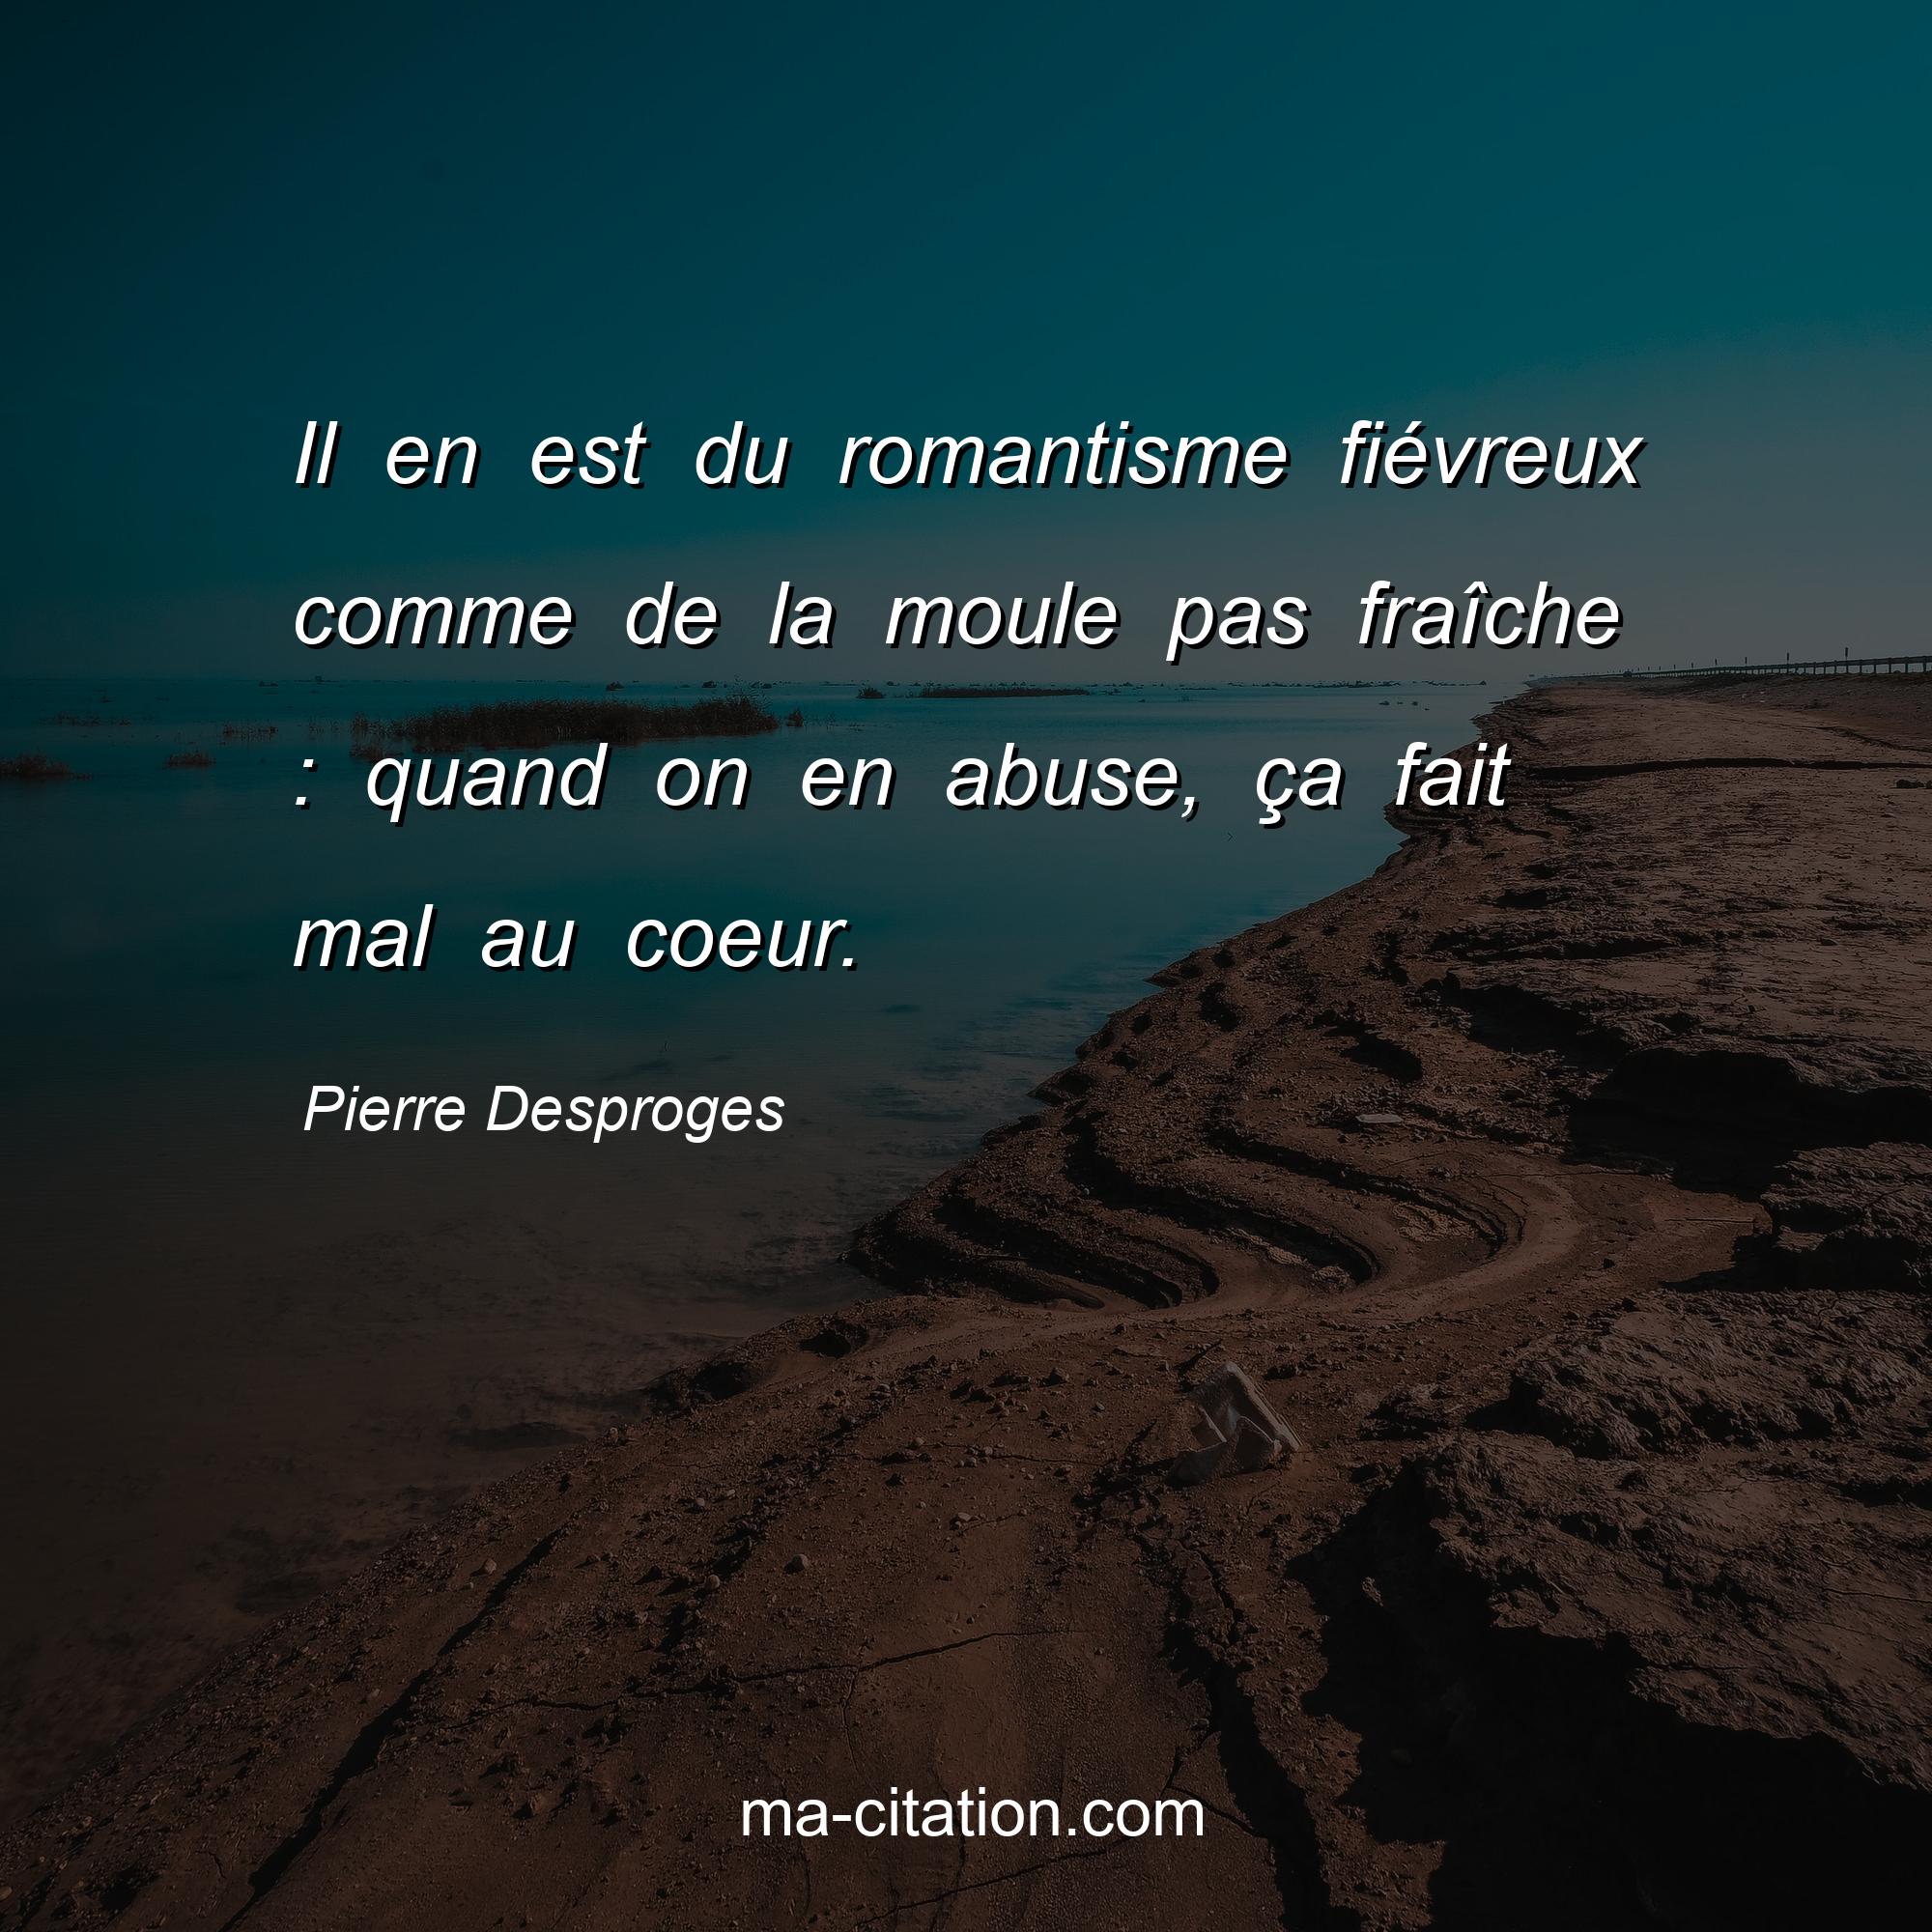 Pierre Desproges : Il en est du romantisme fiévreux comme de la moule pas fraîche : quand on en abuse, ça fait mal au coeur.